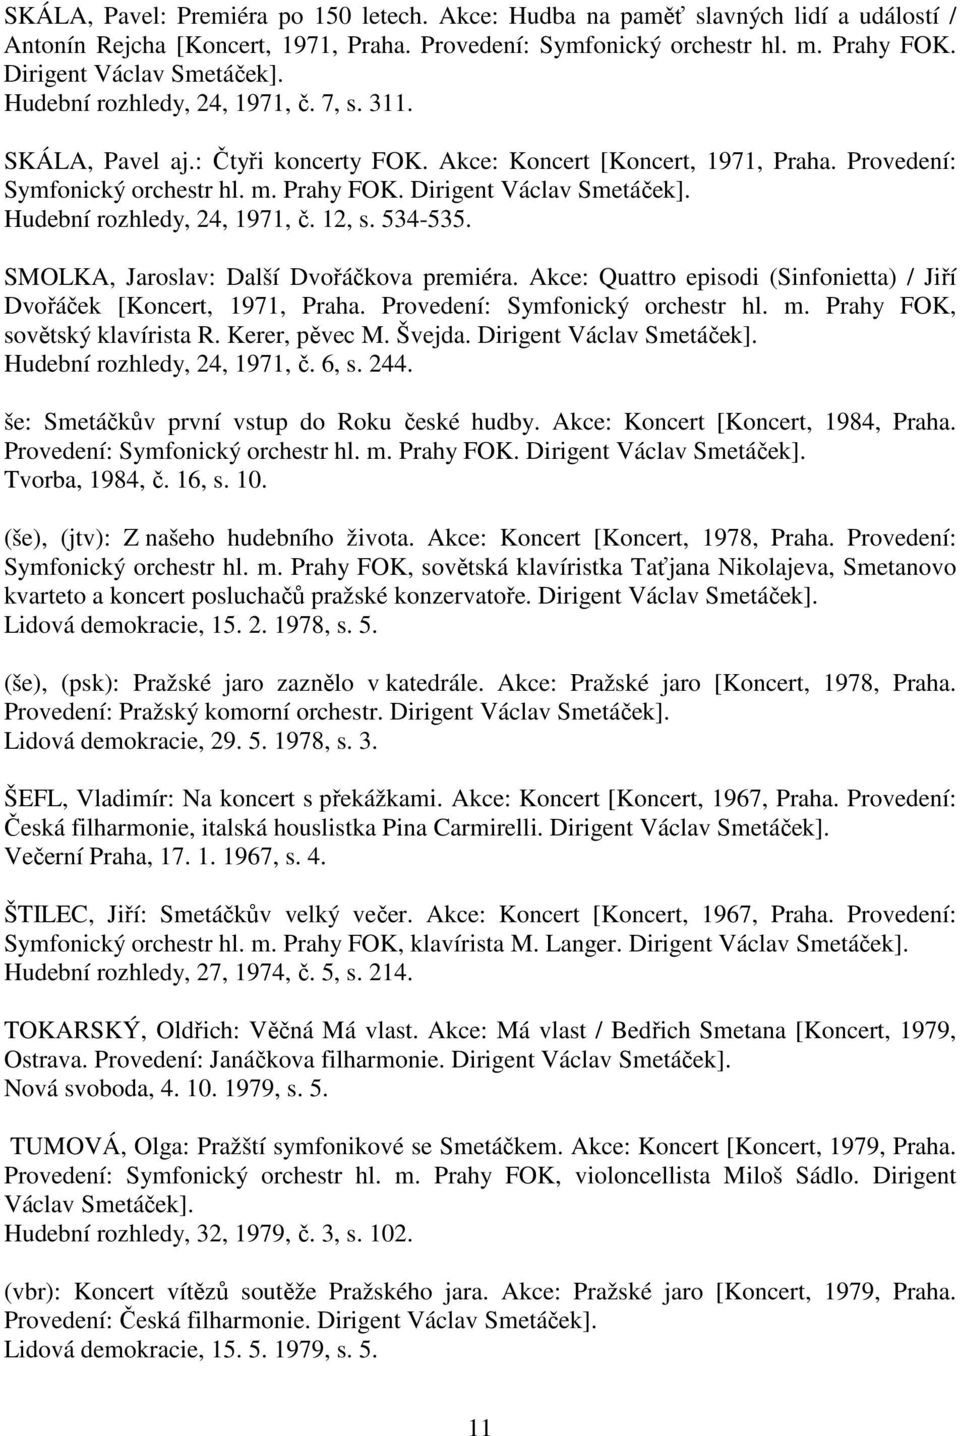 Hudební rozhledy, 24, 1971, č. 12, s. 534-535. SMOLKA, Jaroslav: Další Dvořáčkova premiéra. Akce: Quattro episodi (Sinfonietta) / Jiří Dvořáček [Koncert, 1971, Praha.